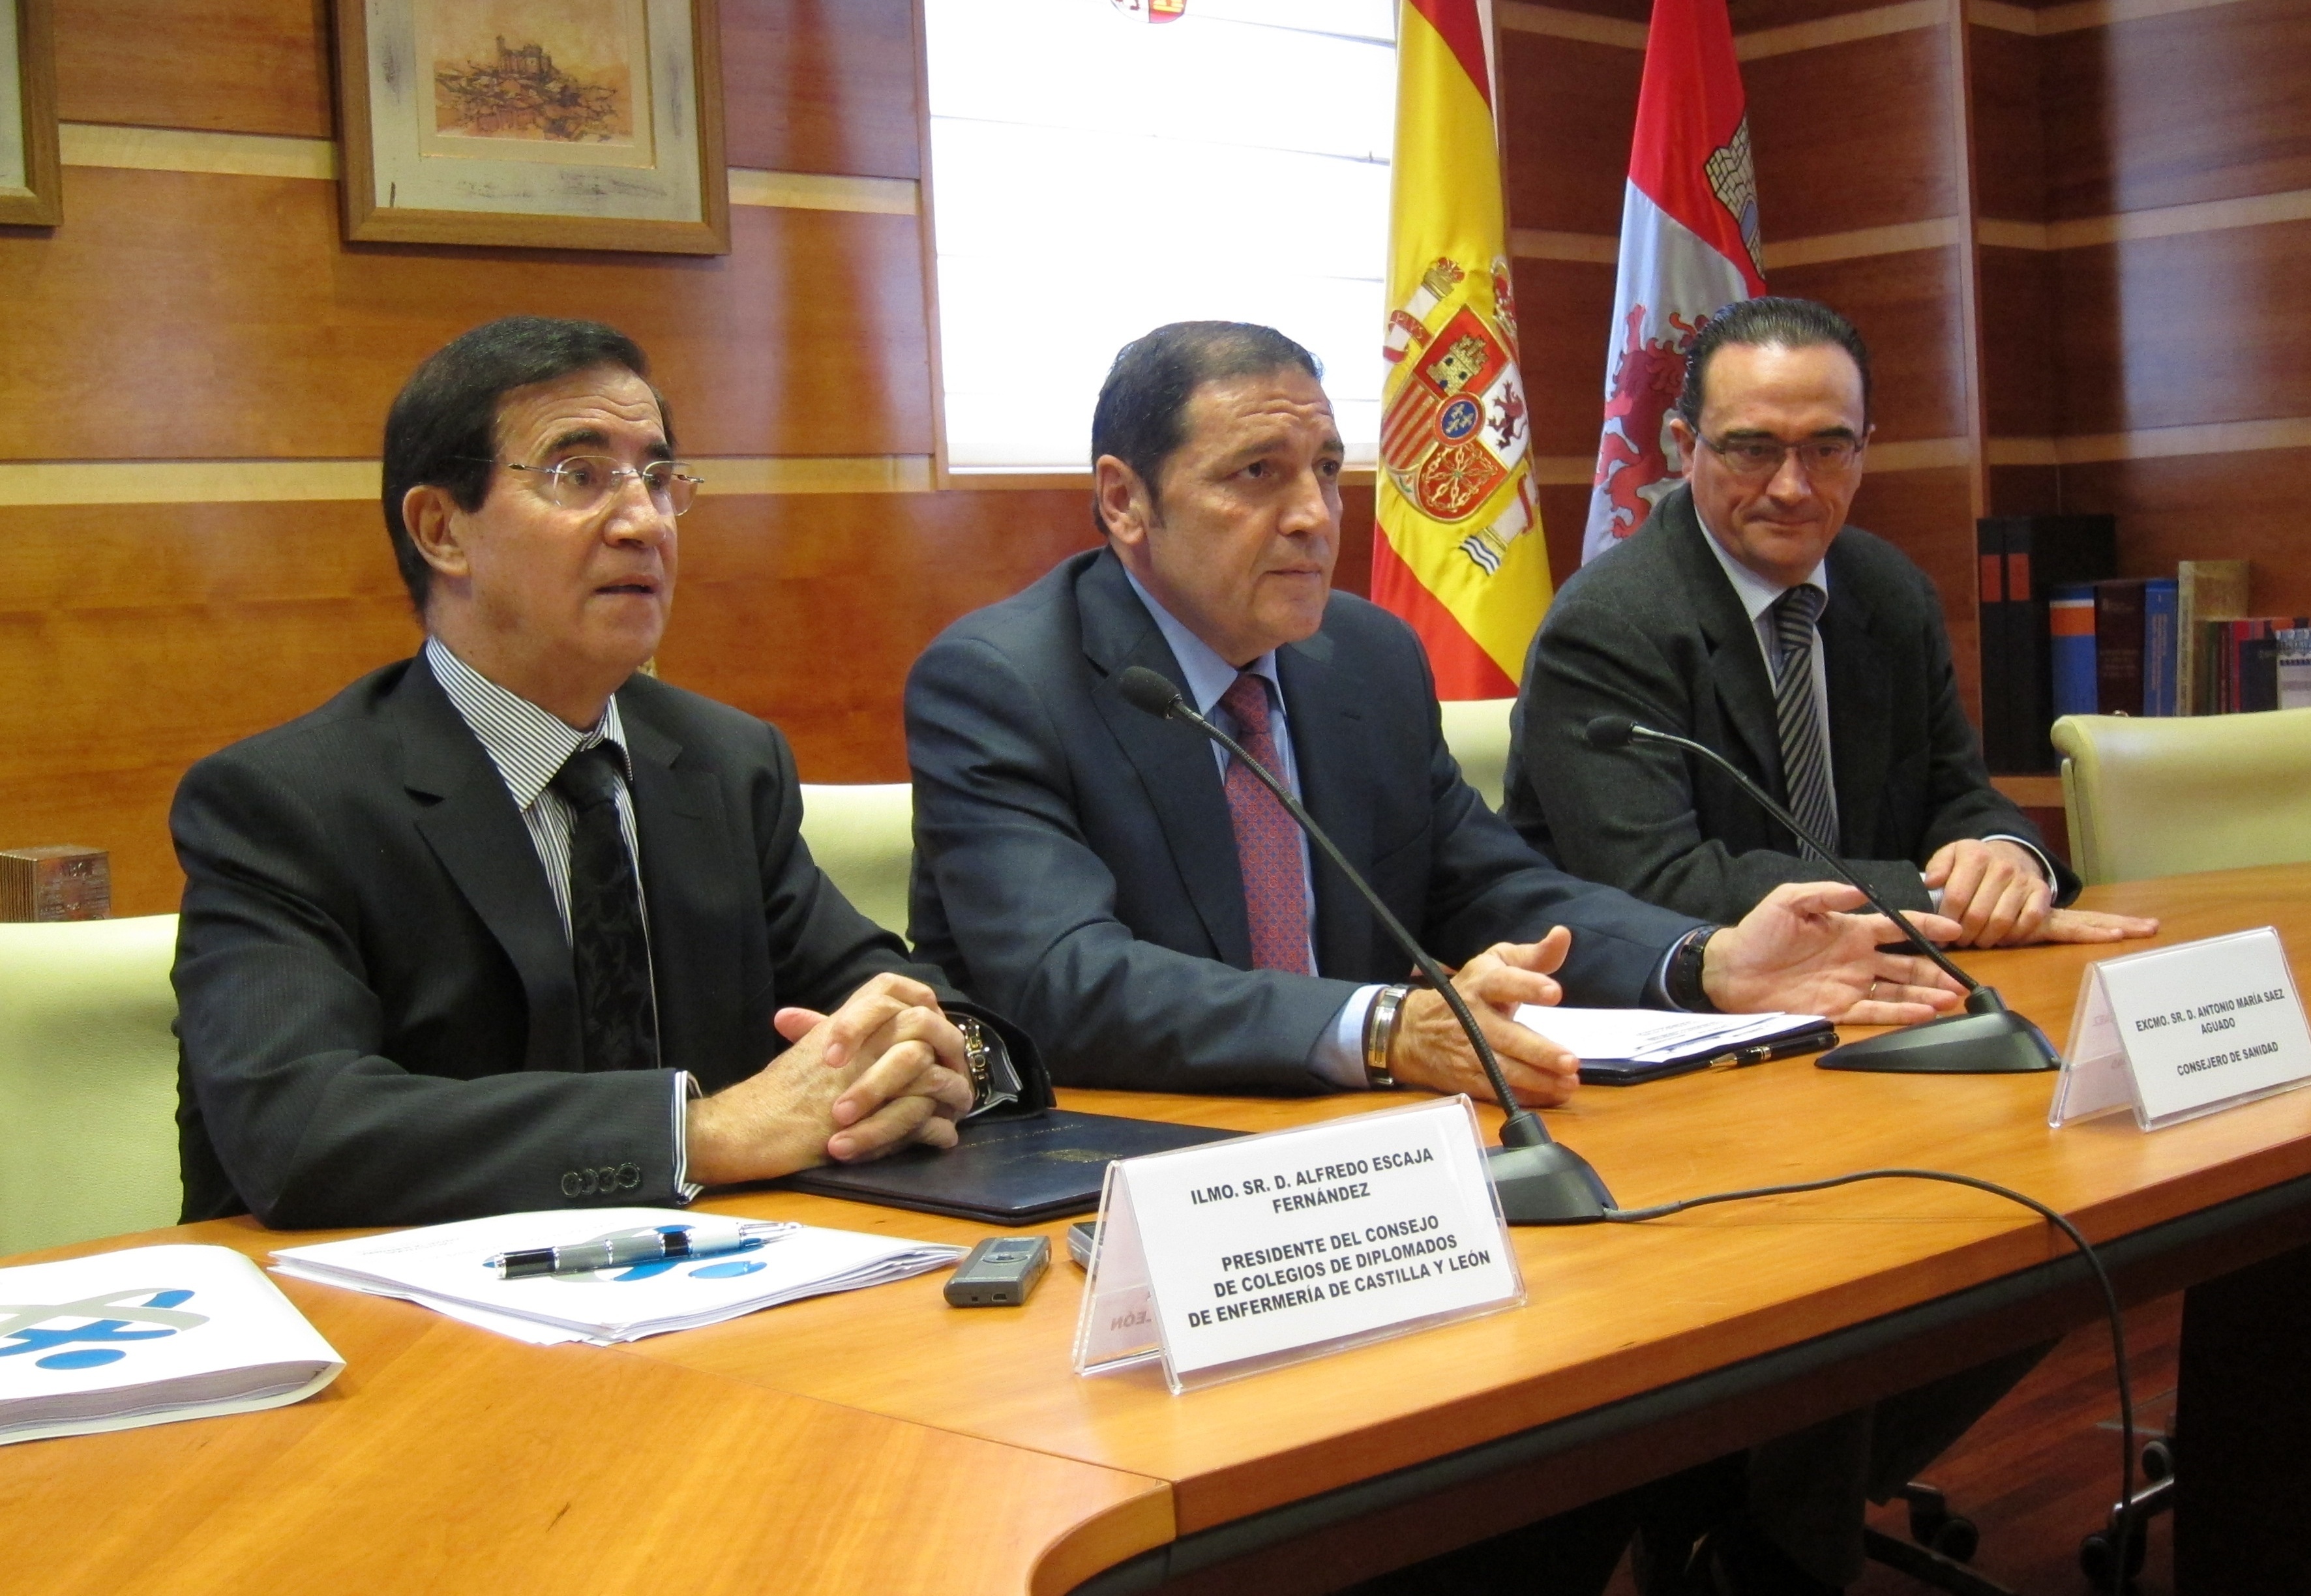 El niño afectado de meningitis en Palencia evoluciona favorablemente y la Junta ya ha tomado medidas, según Sáez Aguado